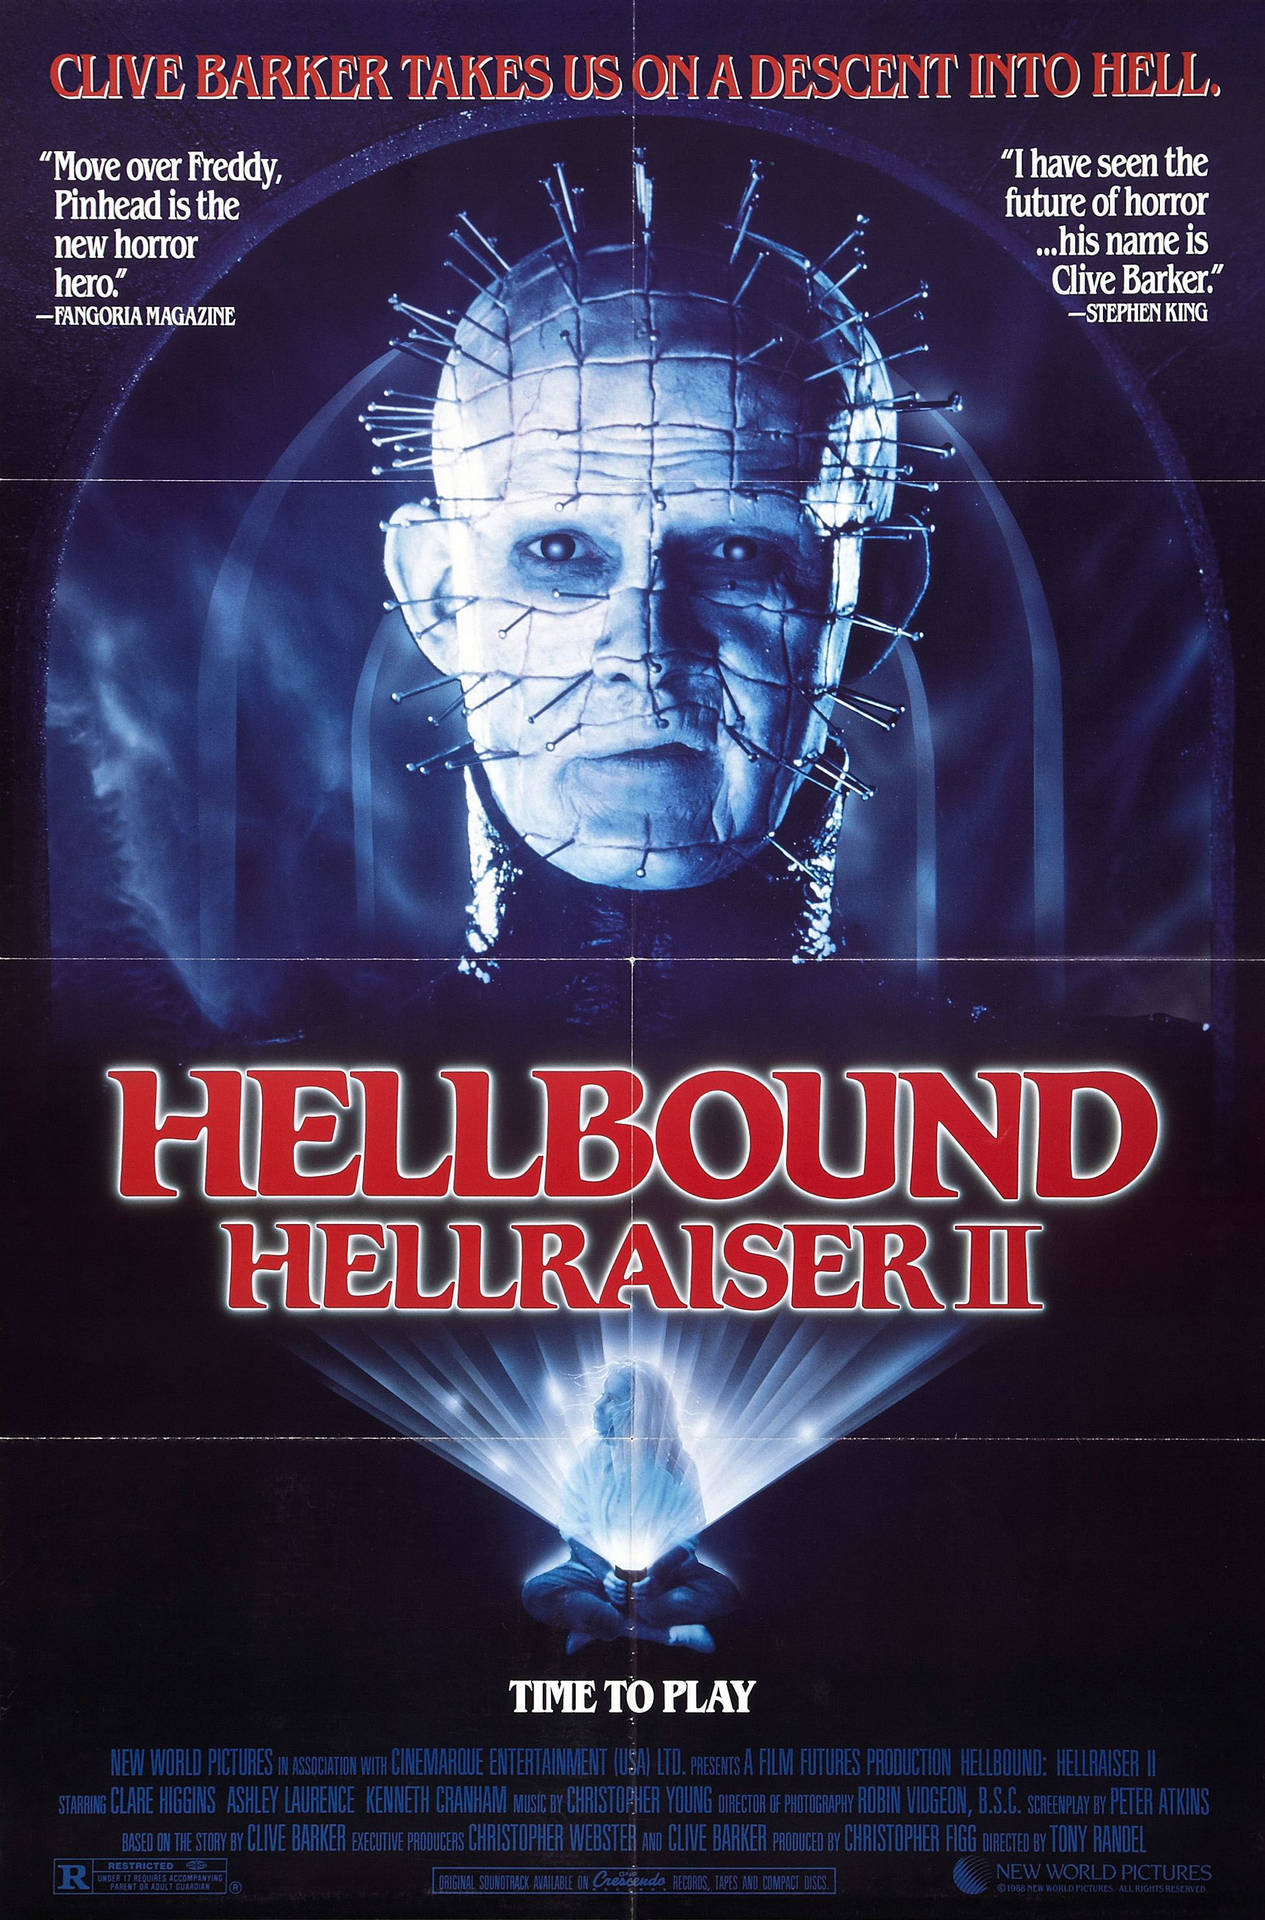 Hellbound Hellraiser Ii Background